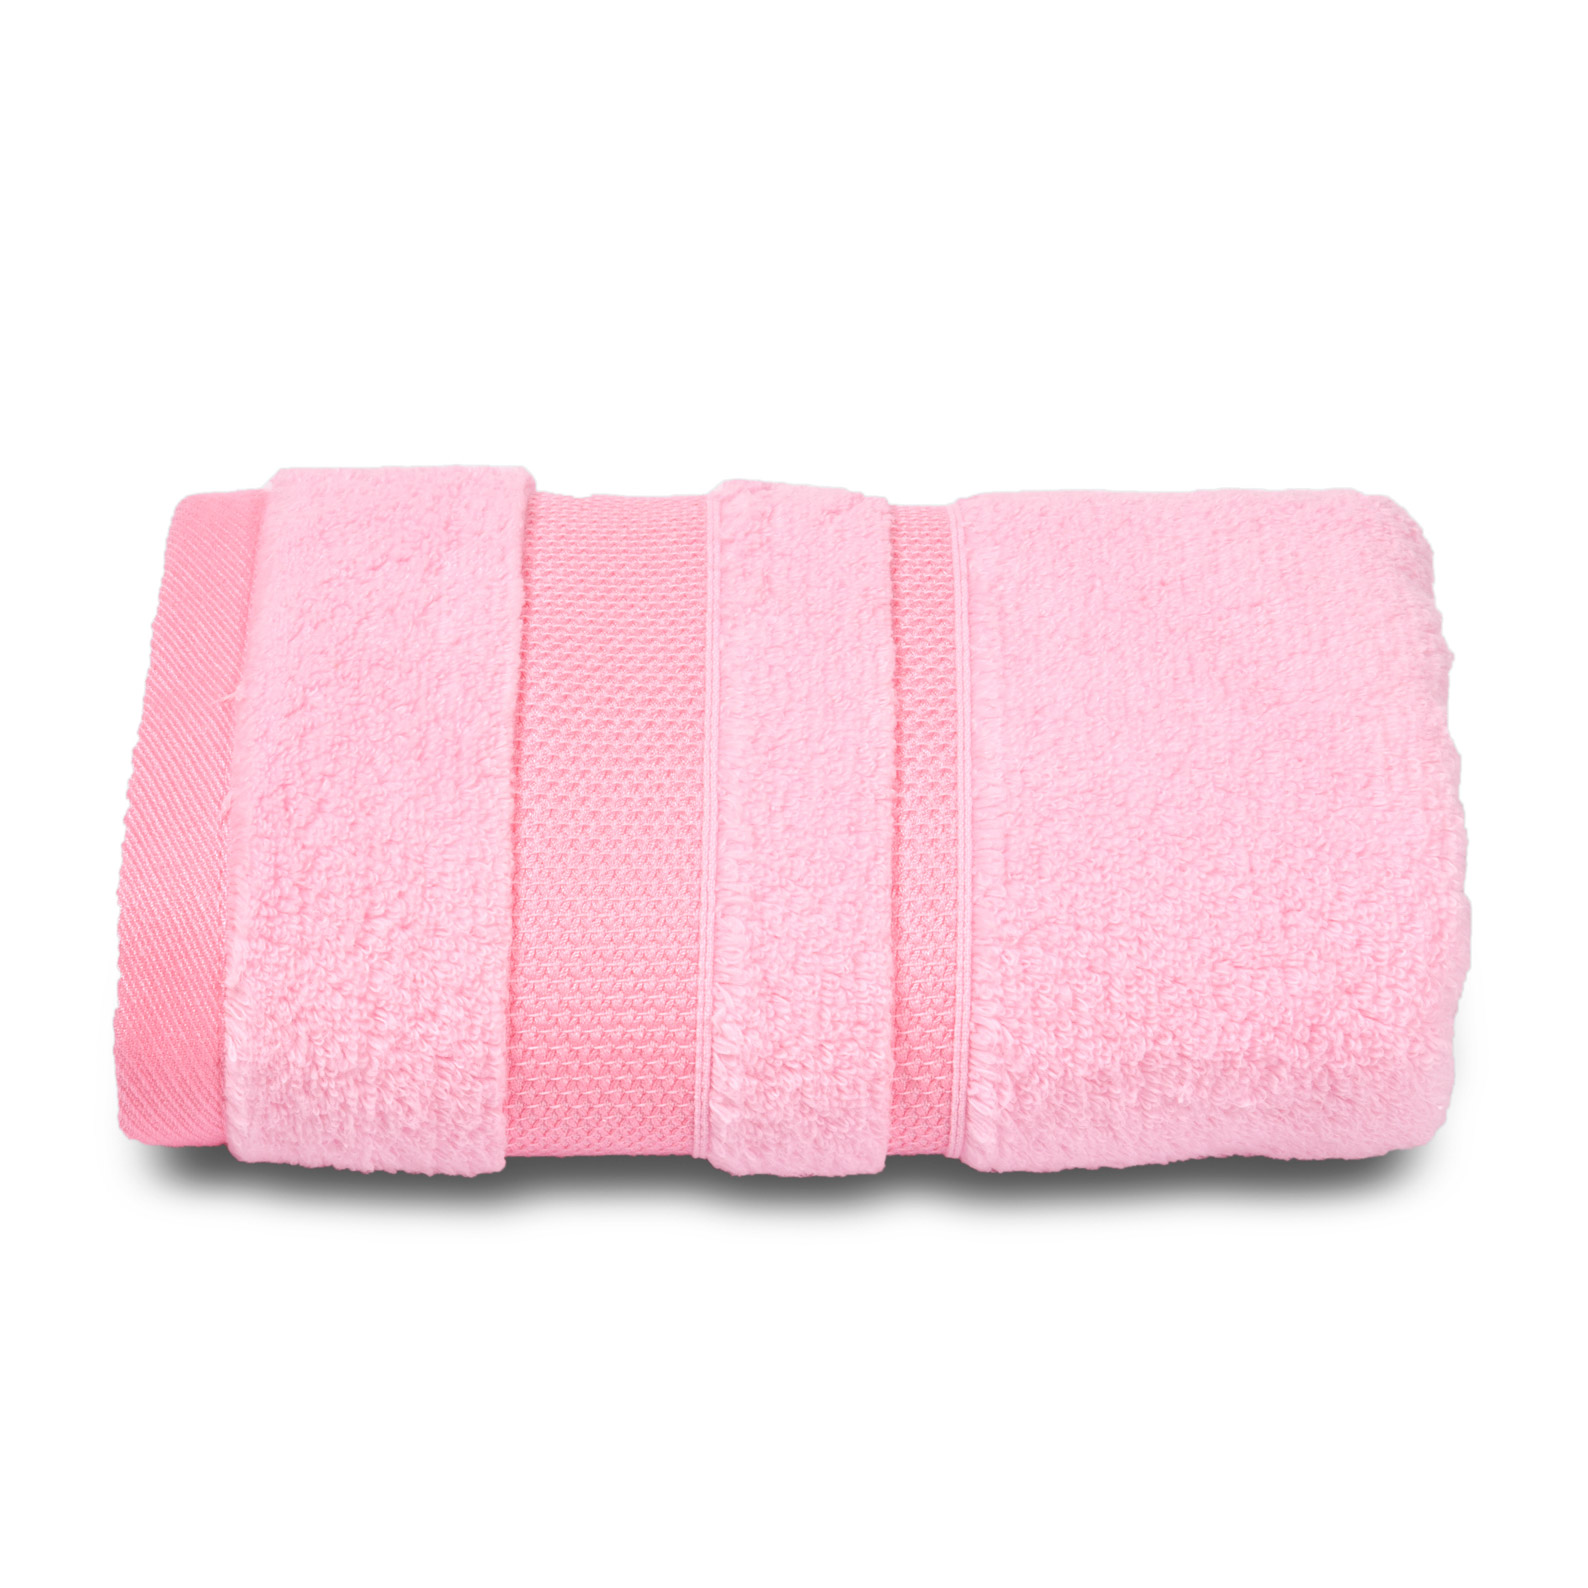 Полотенце махровое Cleanelly perfetto твист 50х100 розовый полотенце аркадия экру 50х100 600г м2 10 00 01 1078